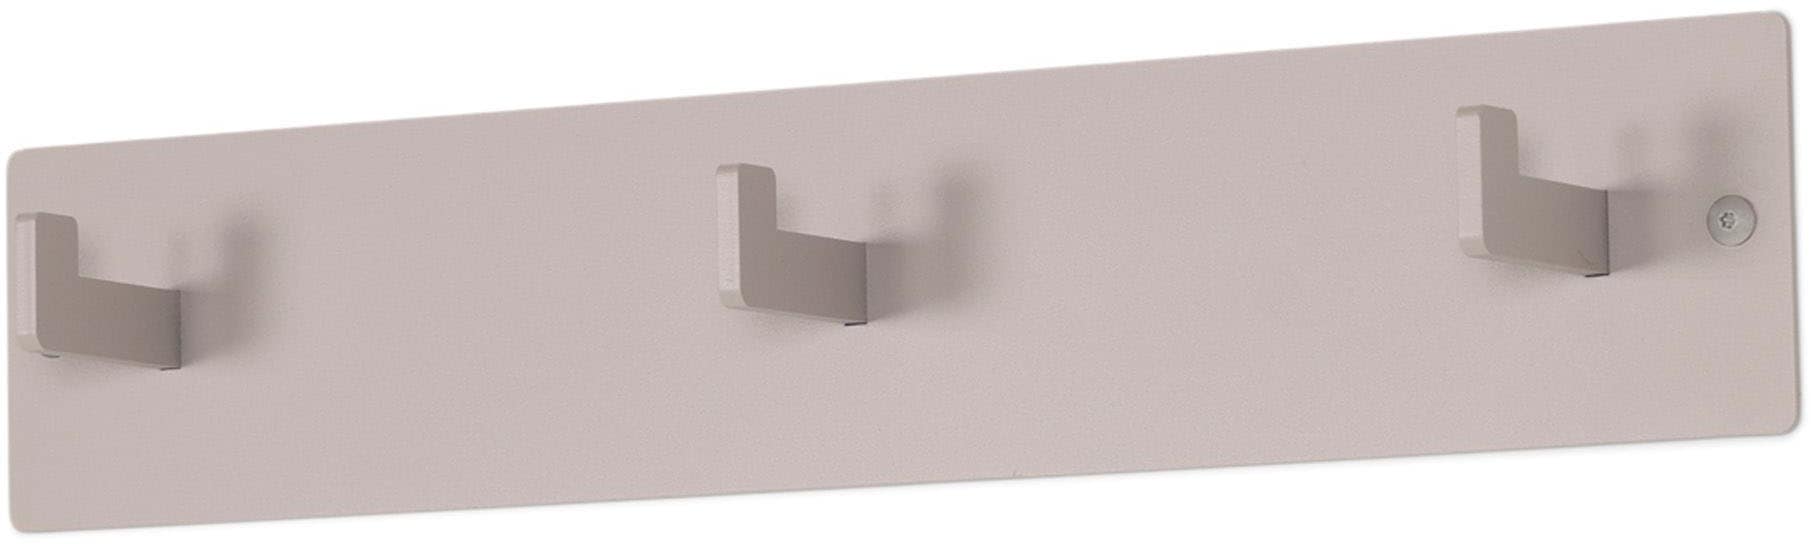 Spinder Design Garderobenhaken, Metall, Zeitloses Design, 3 Haken, Breite 50 cm